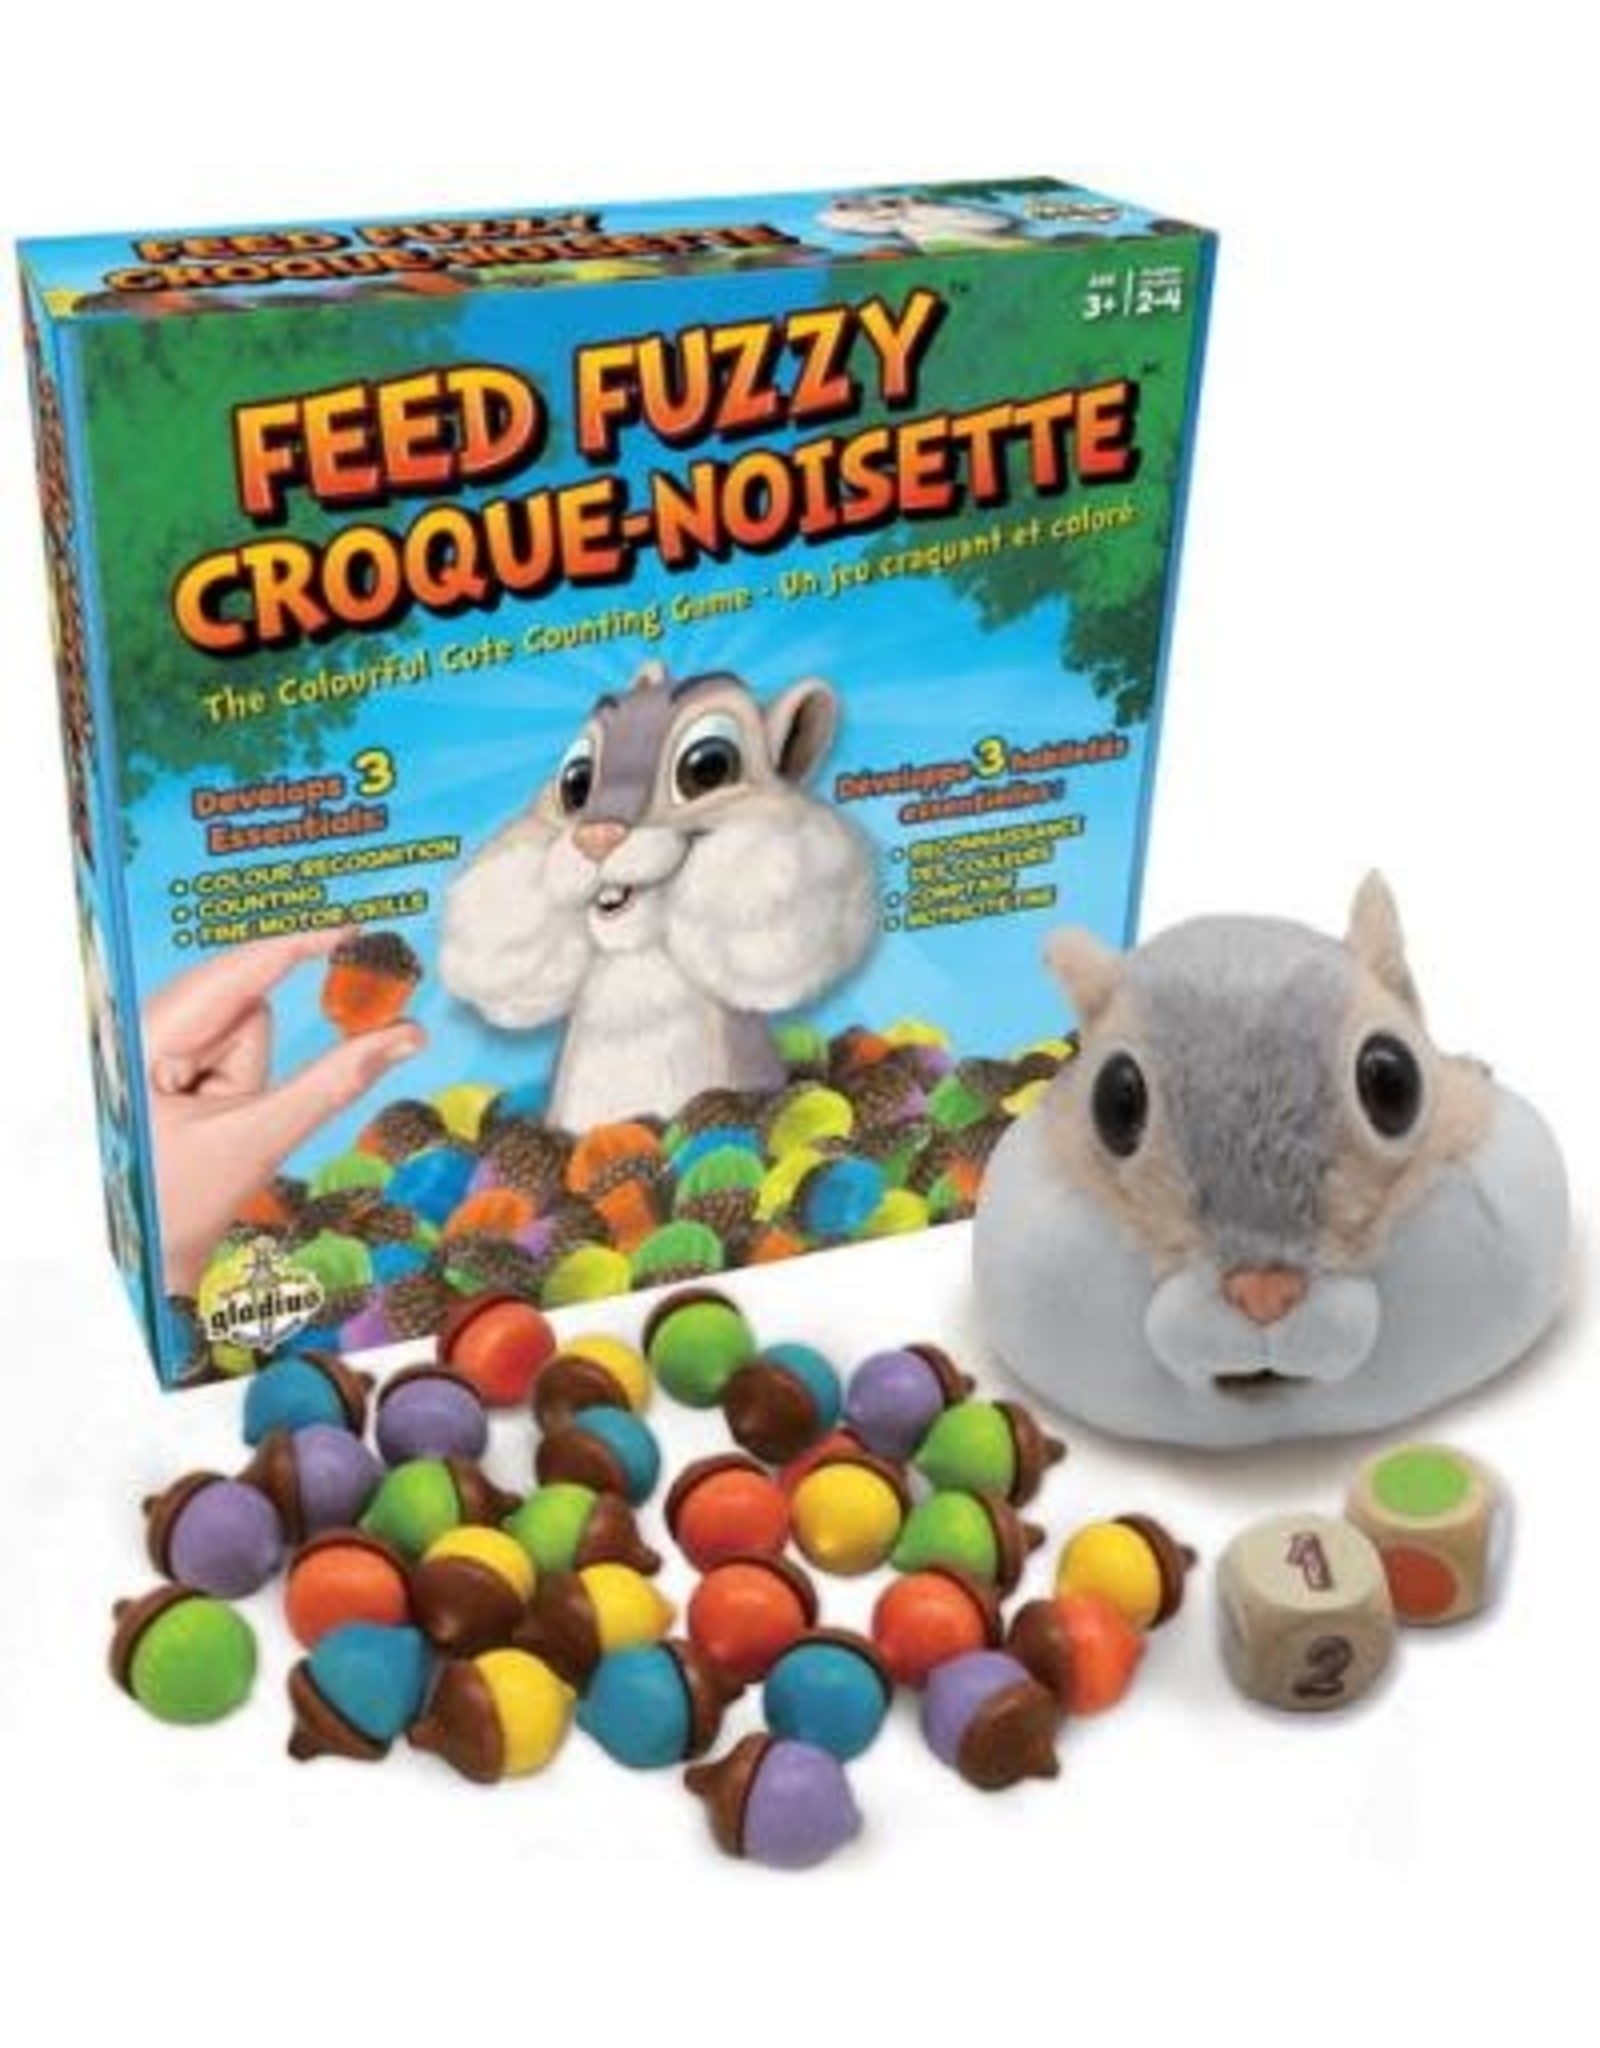 Gladius Croque-noisette/Feed Fuzzy